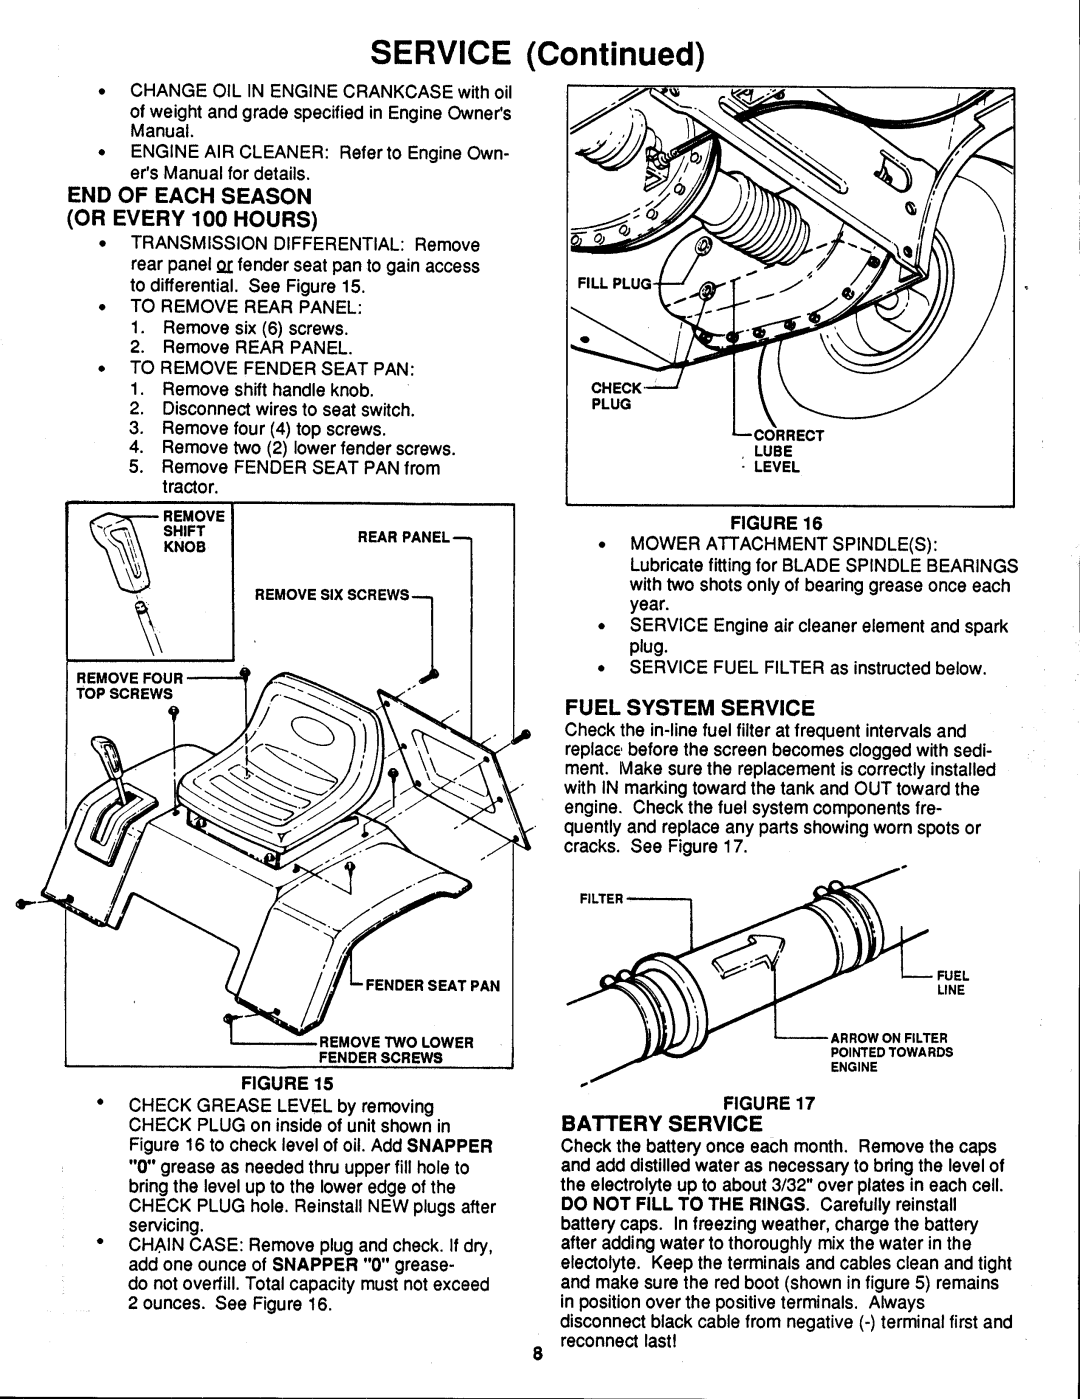 Snapper ELT125D331KV SERIES manual 